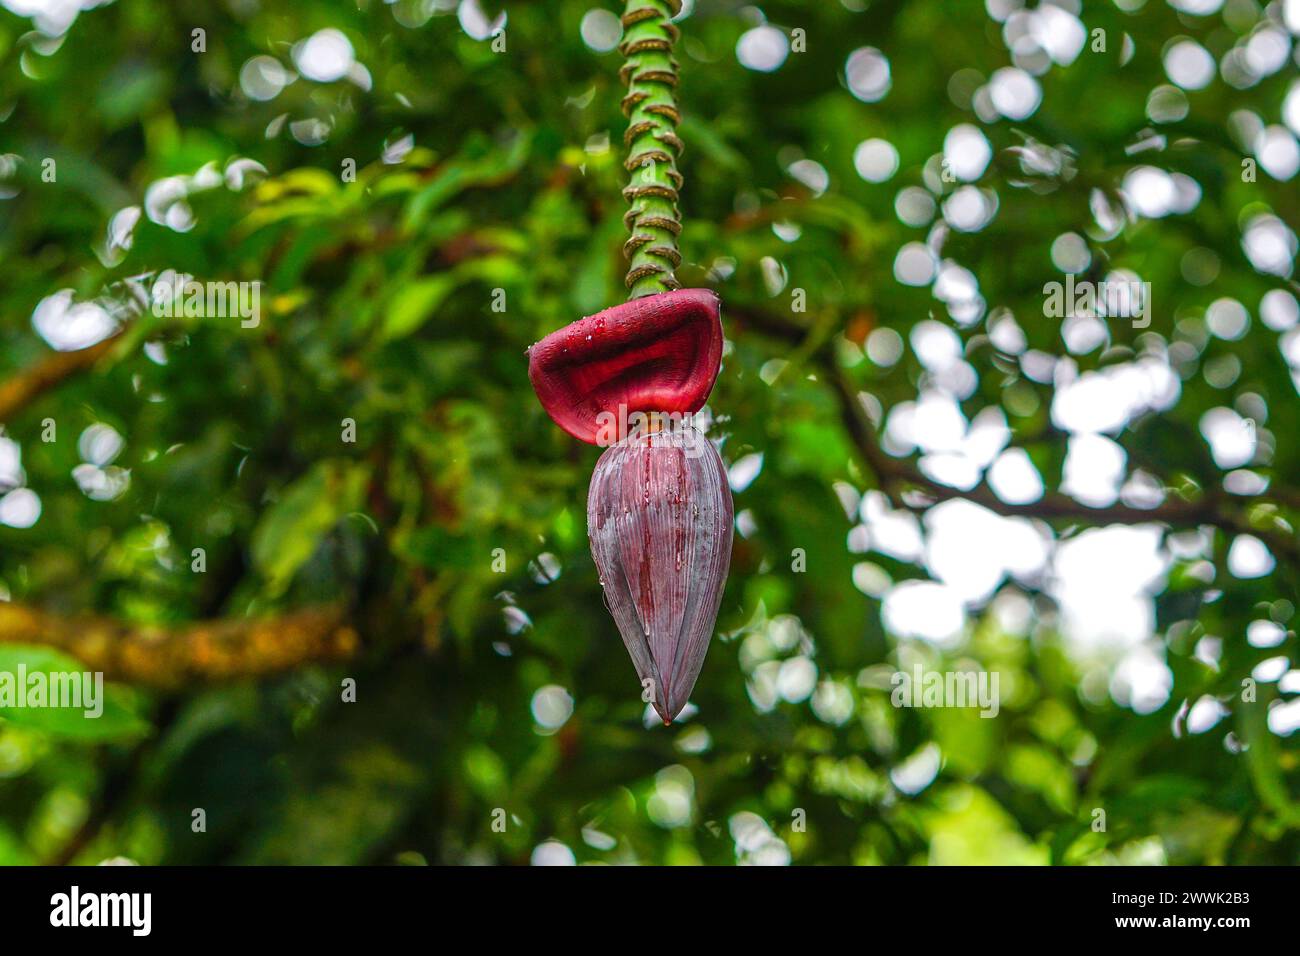 Fleur de banane rouge accrochée sur son arbre, bourgeon mâle d'un bananier, bourgeon de fleur mâle banane Banque D'Images